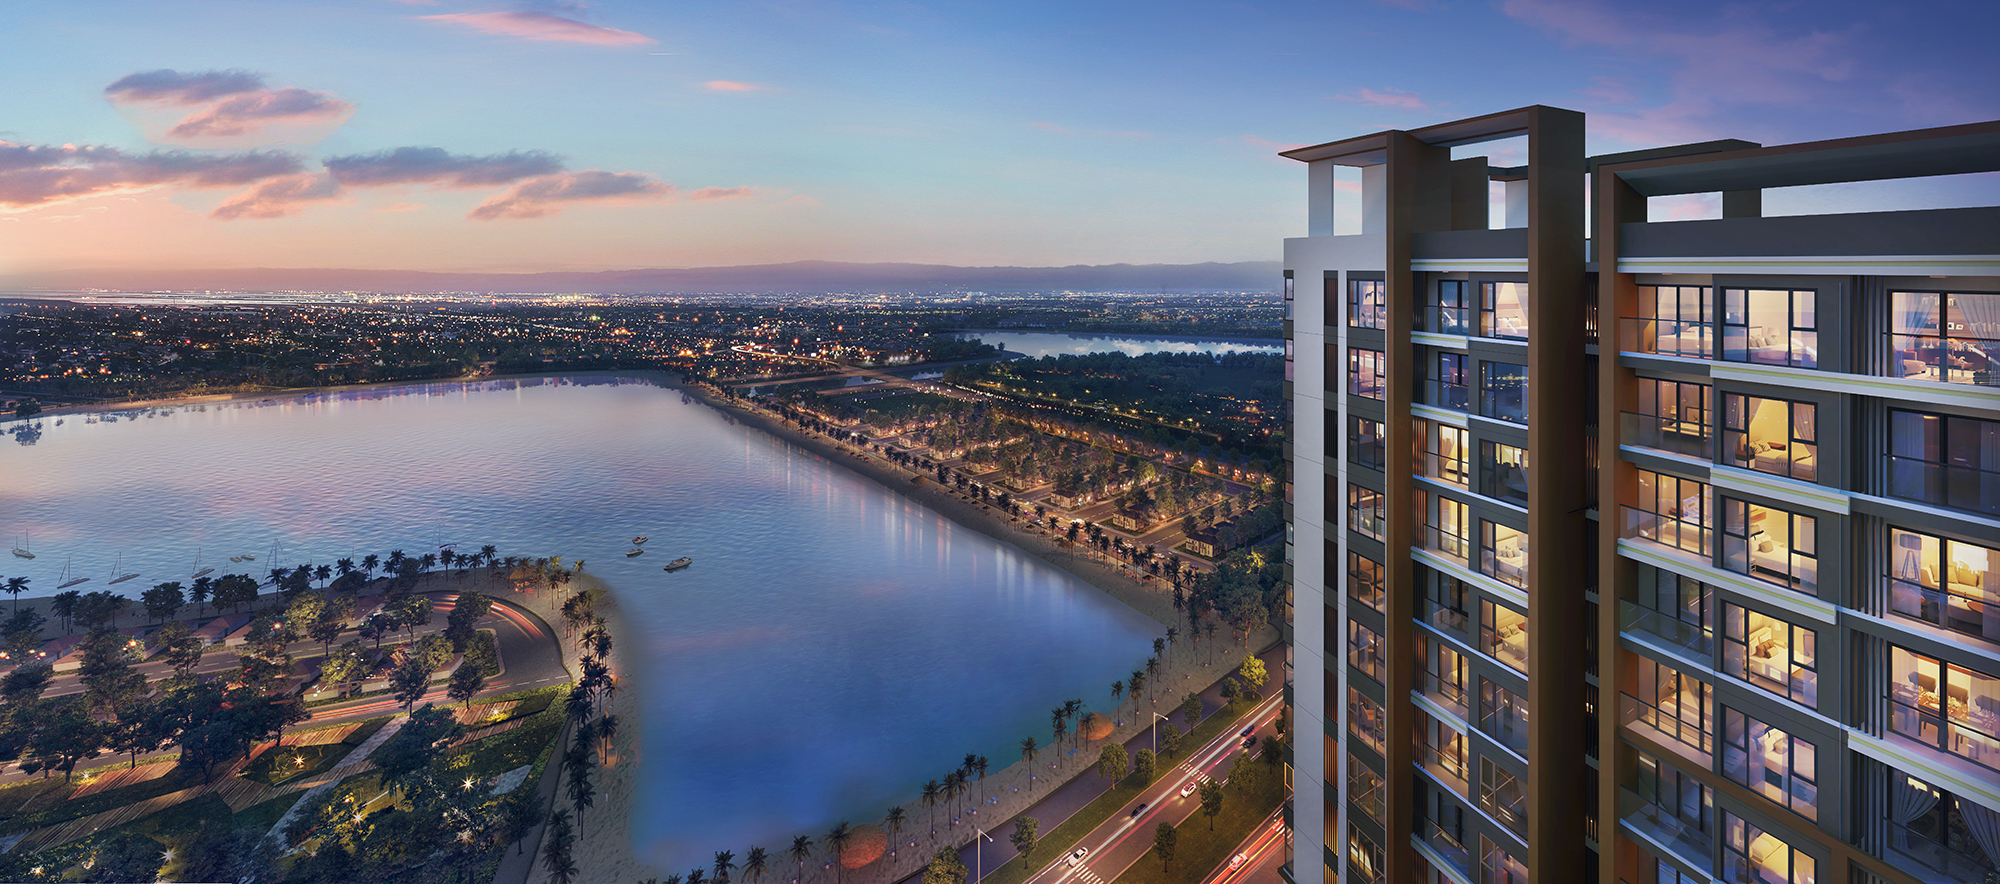 Tiêu chí đánh giá mặt bằng dự án khi chọn mua căn hộ chung cư Masteri Waterfront